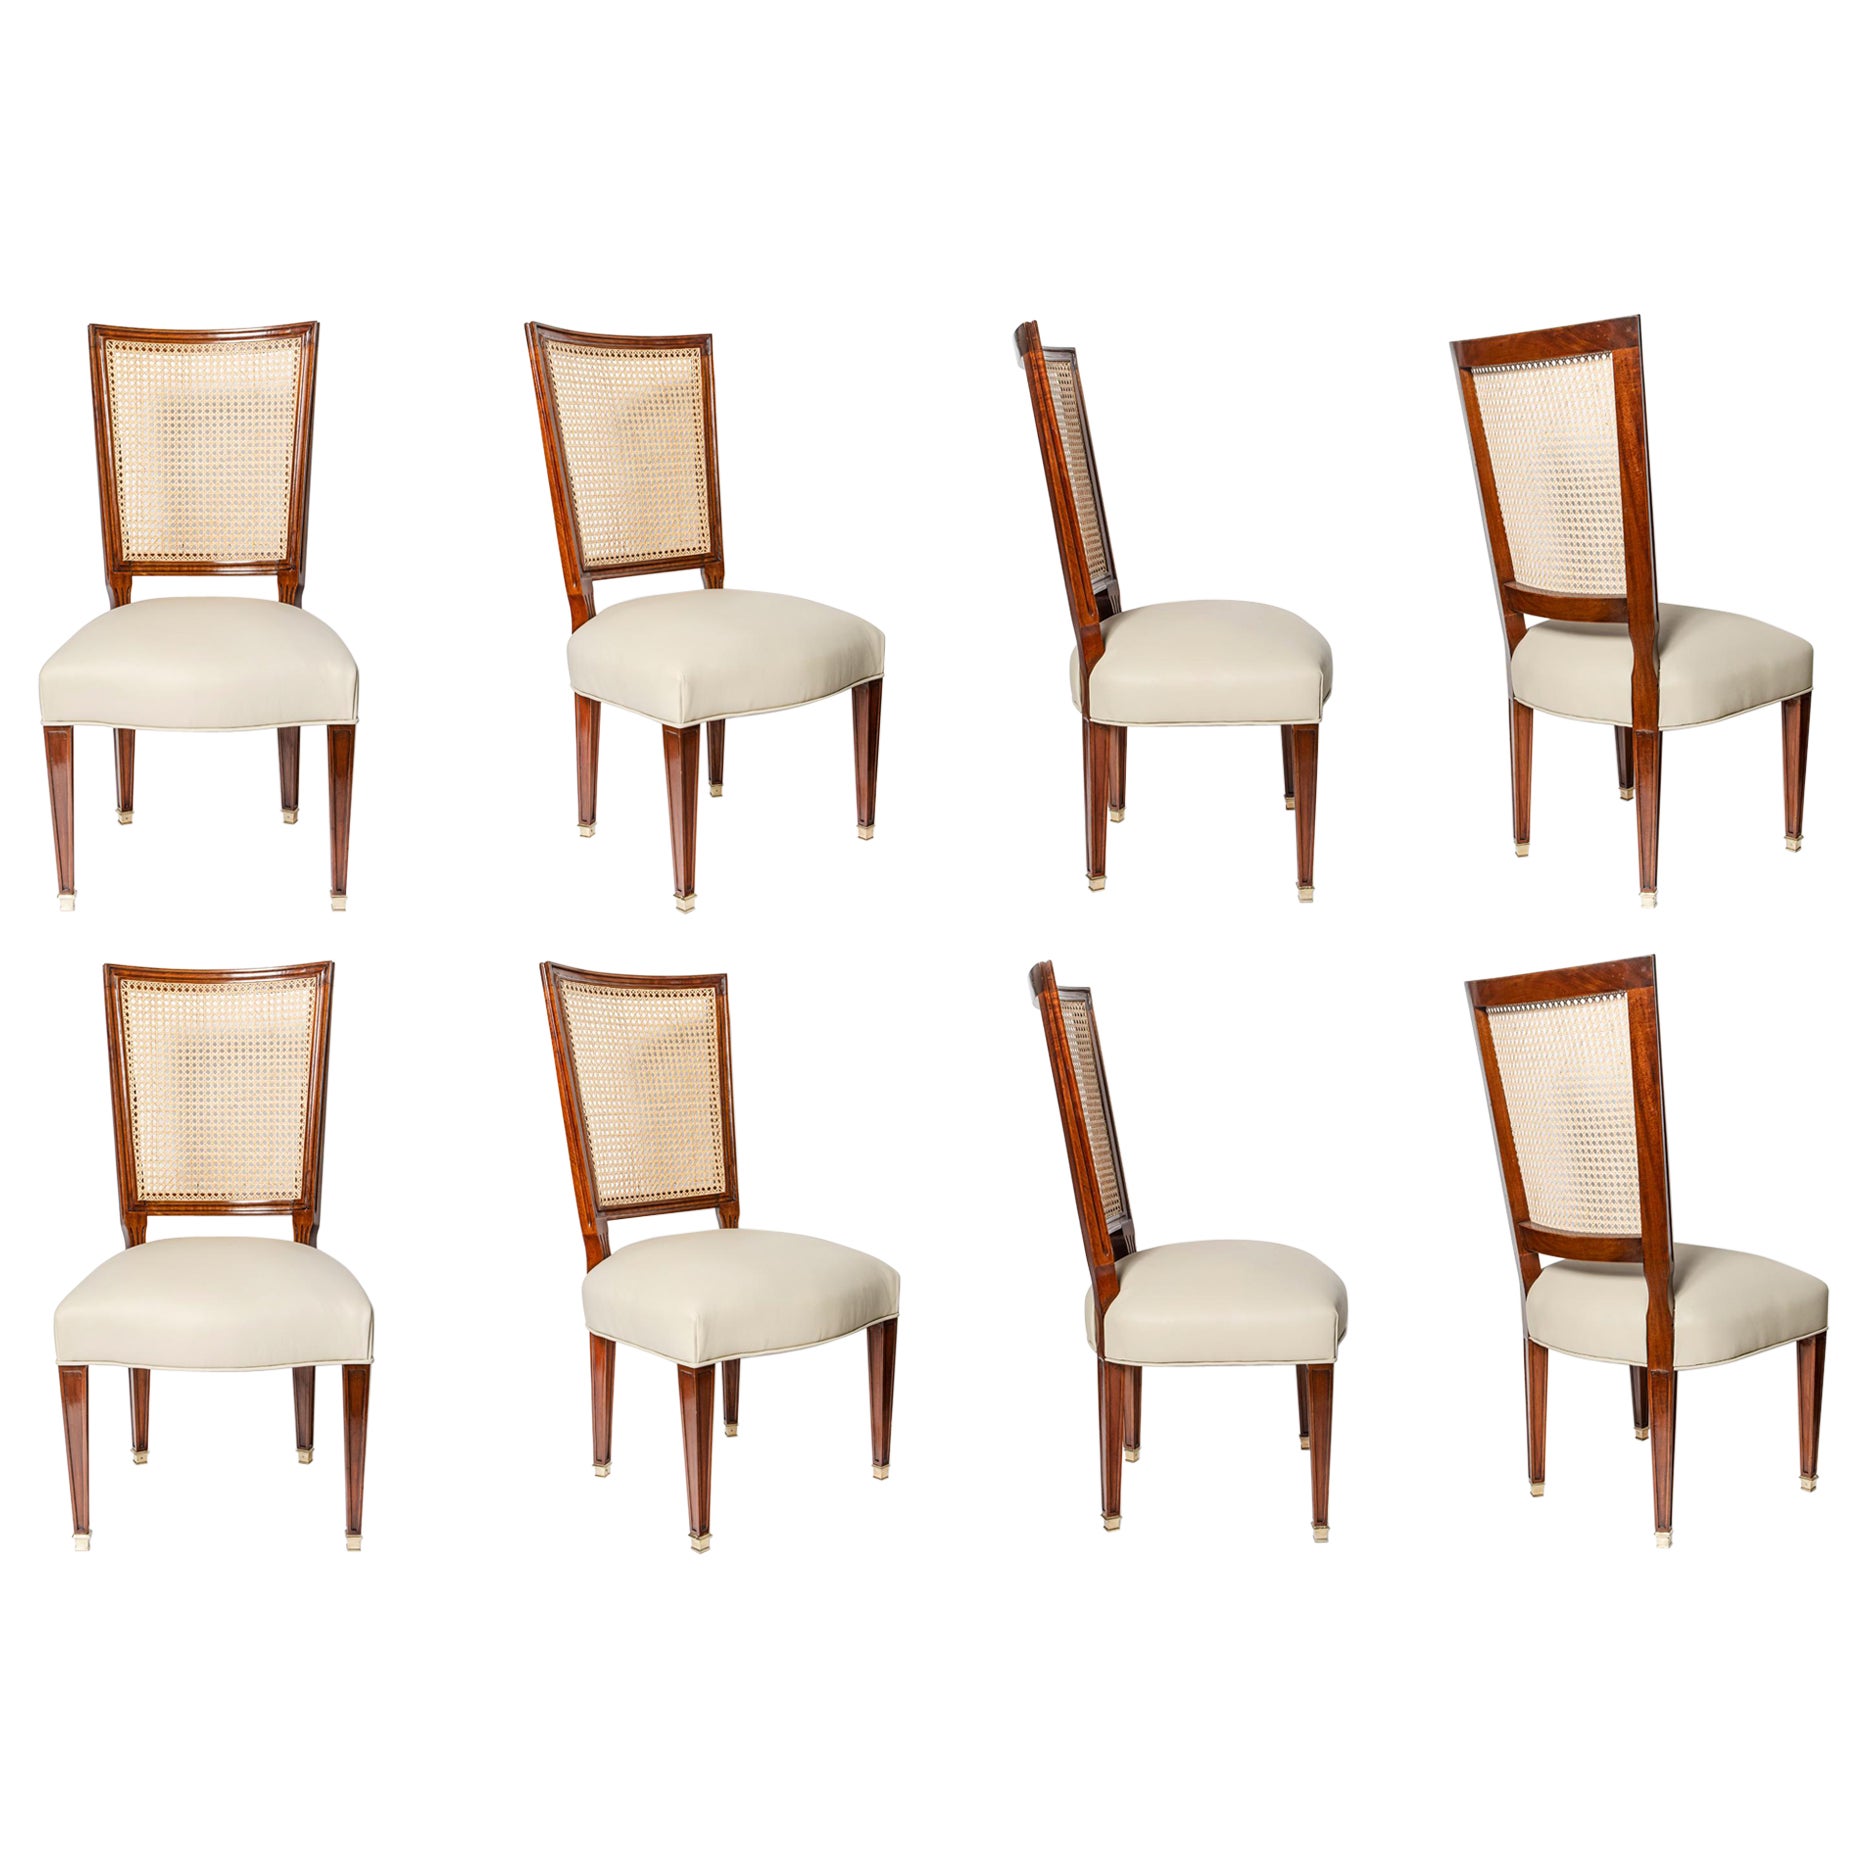 Ensemble de huit chaises en bois, rotin et cuir de Casa Comte, Argentine, 1940.